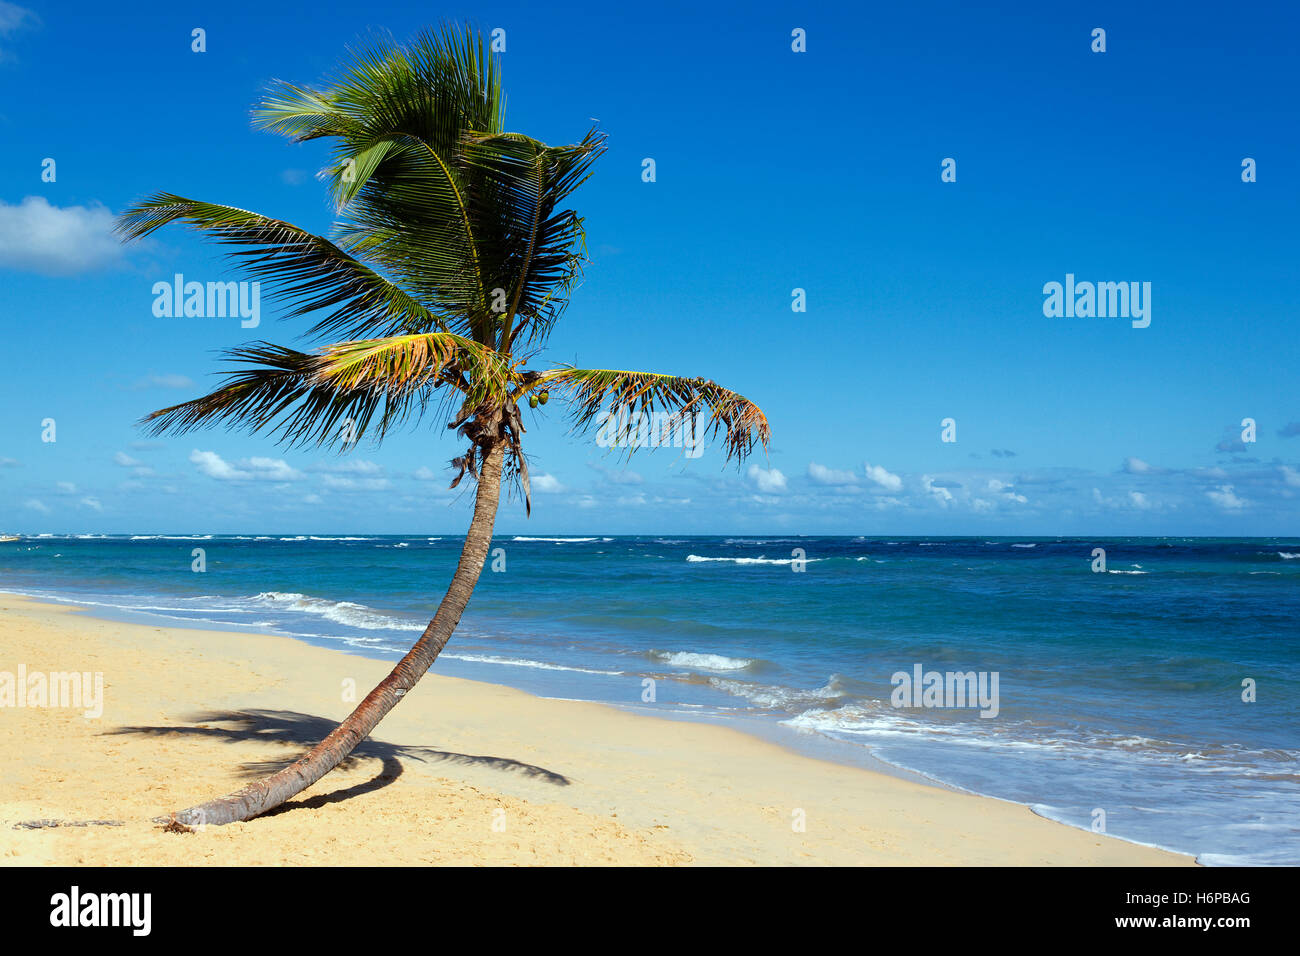 Maison de vacances locations de vacances vacances ciel Paradise beach la plage de bord de mer palm island dream république dominicaine mer salée Banque D'Images